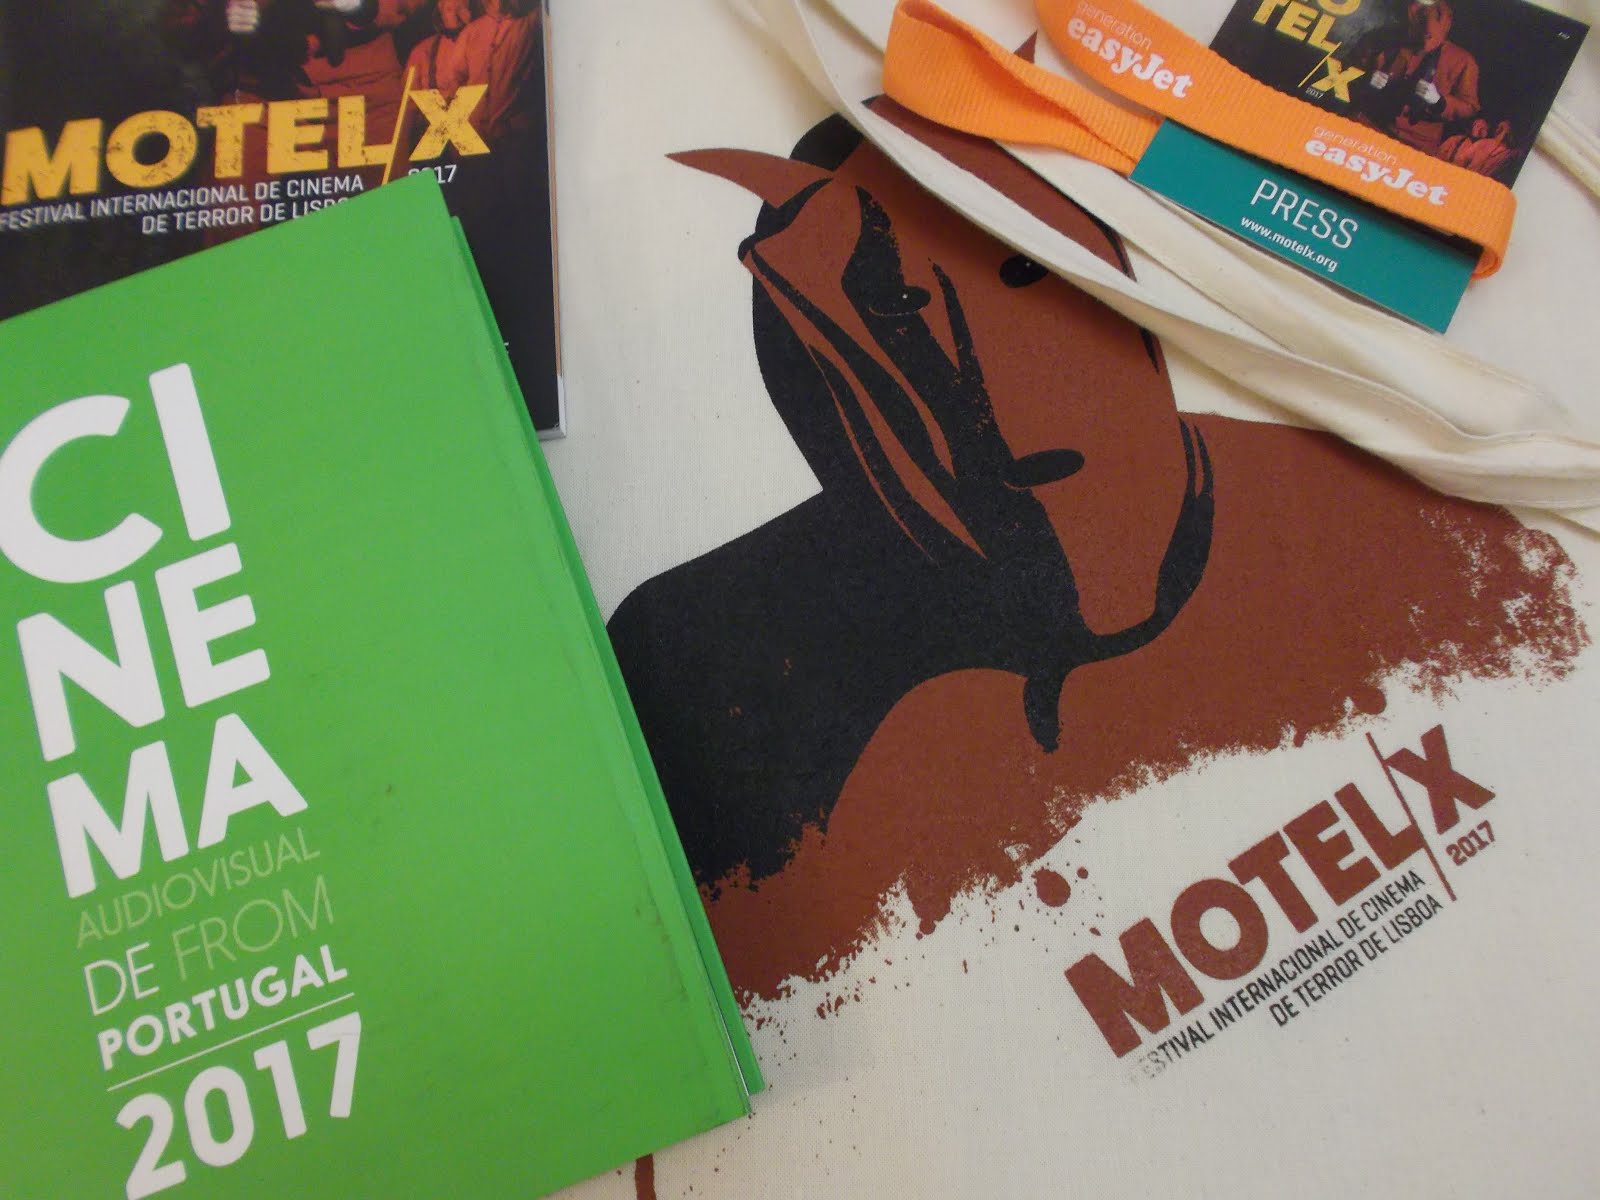 Entrevista aos directores do Motelx: “Os festivais de cinema, mesmo que  sejam de nicho, não se